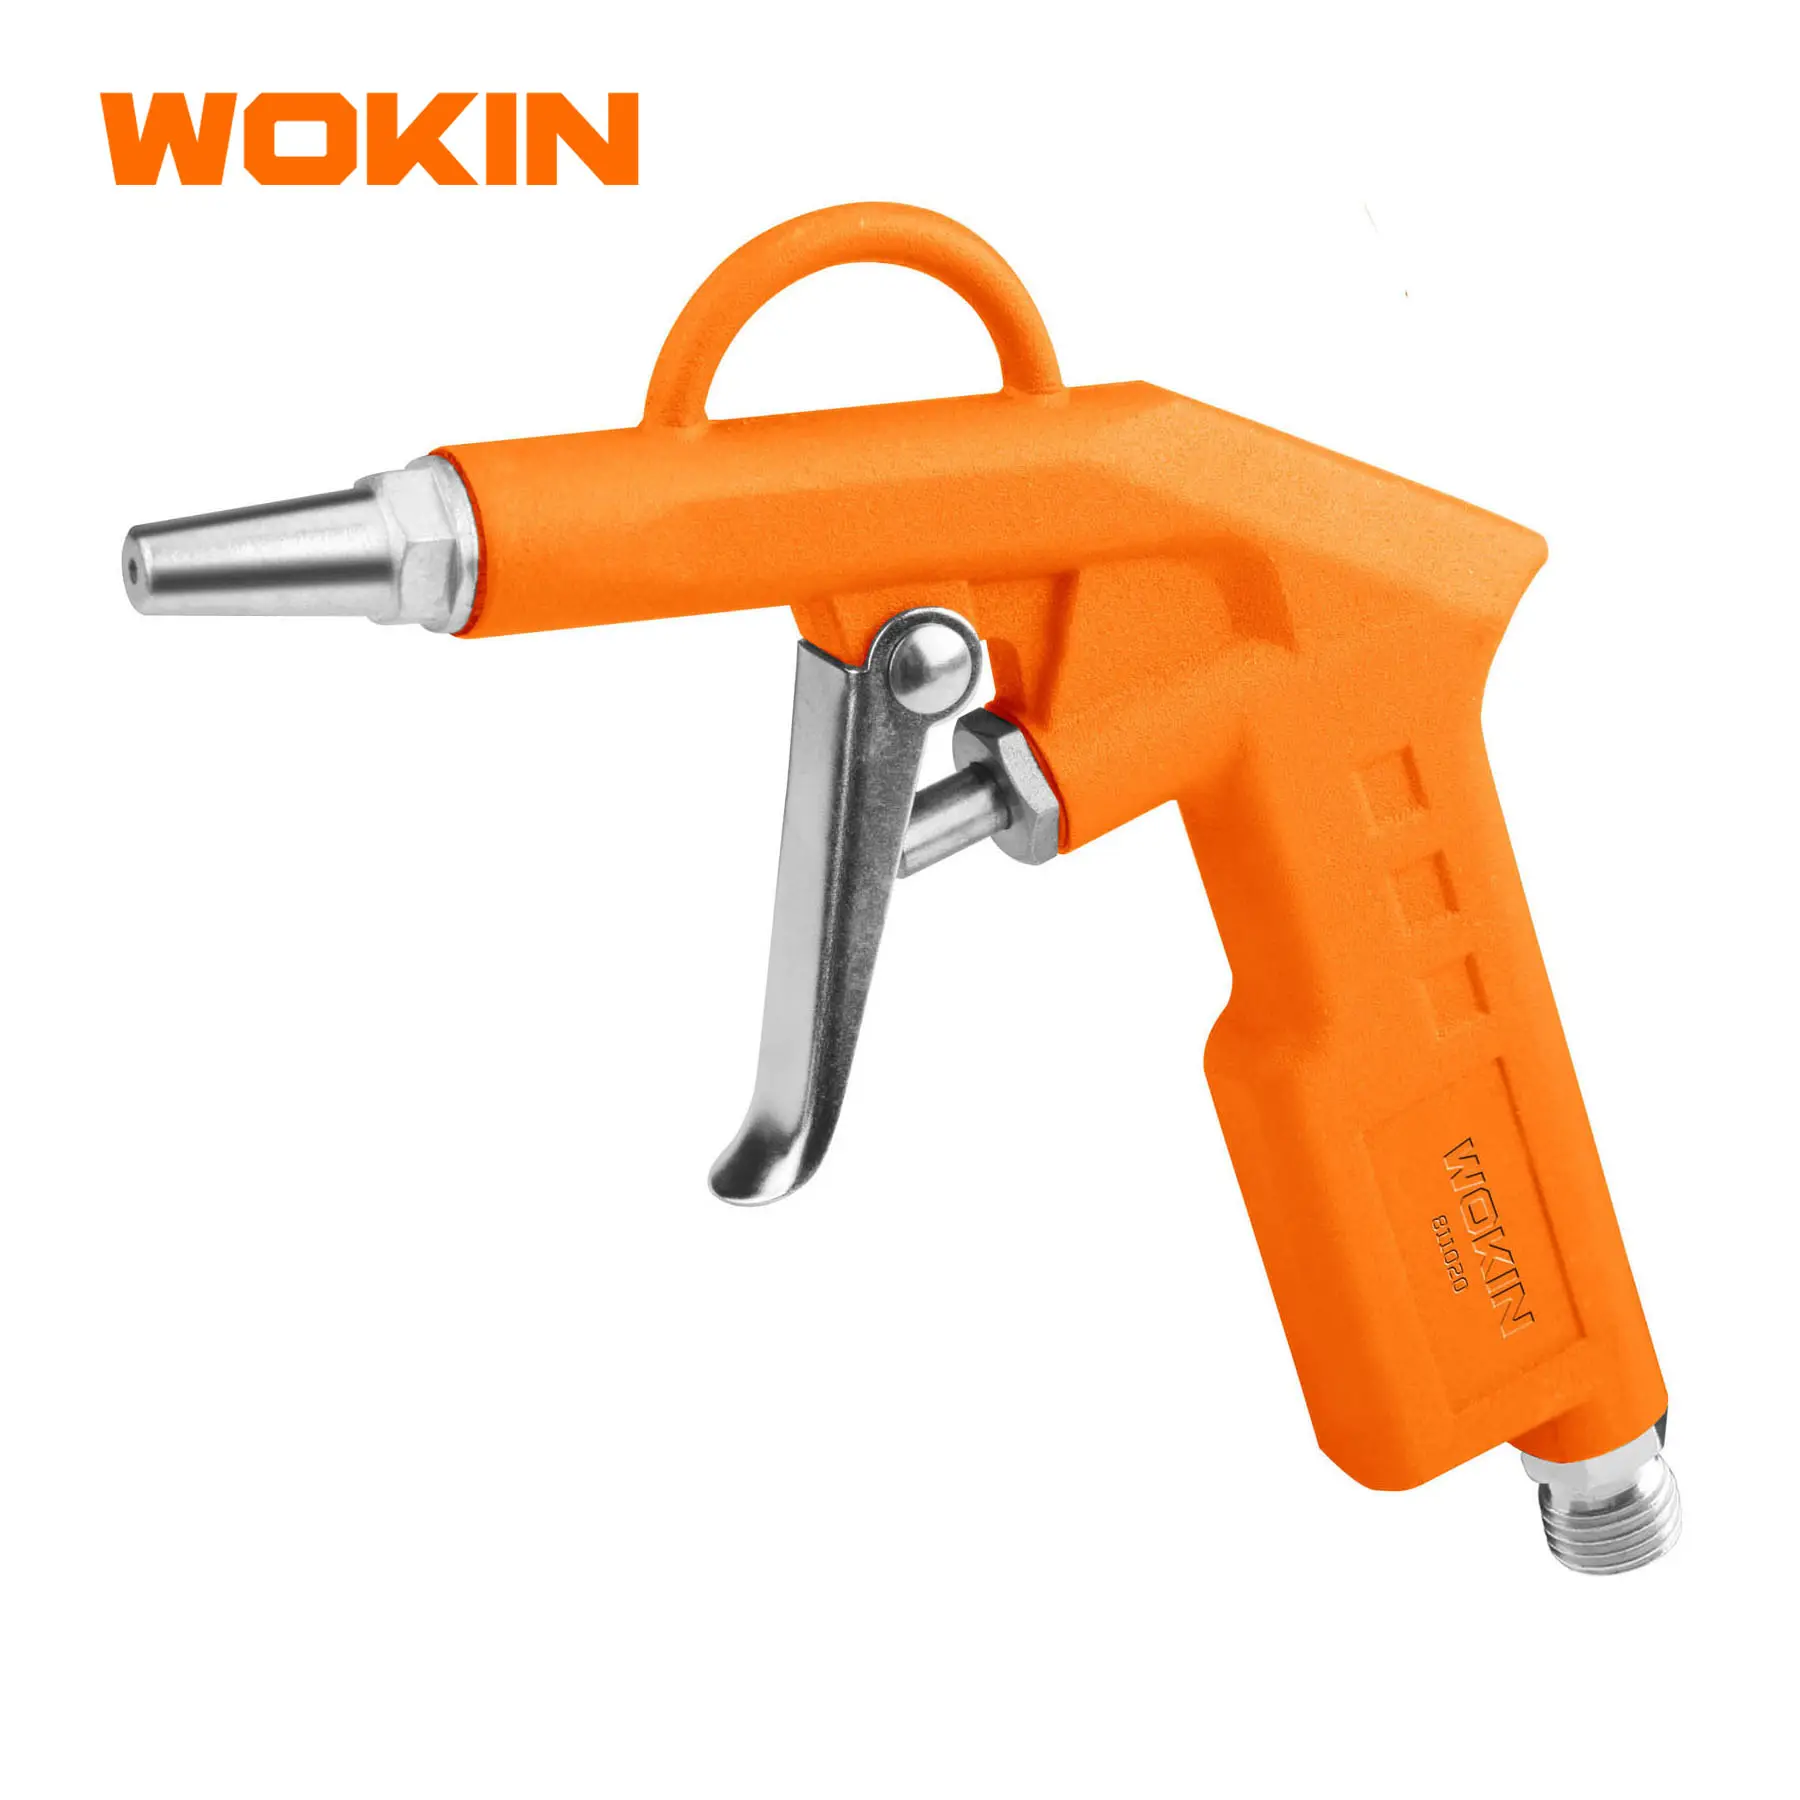 WOKIN 811020 AIR BLOW GUN